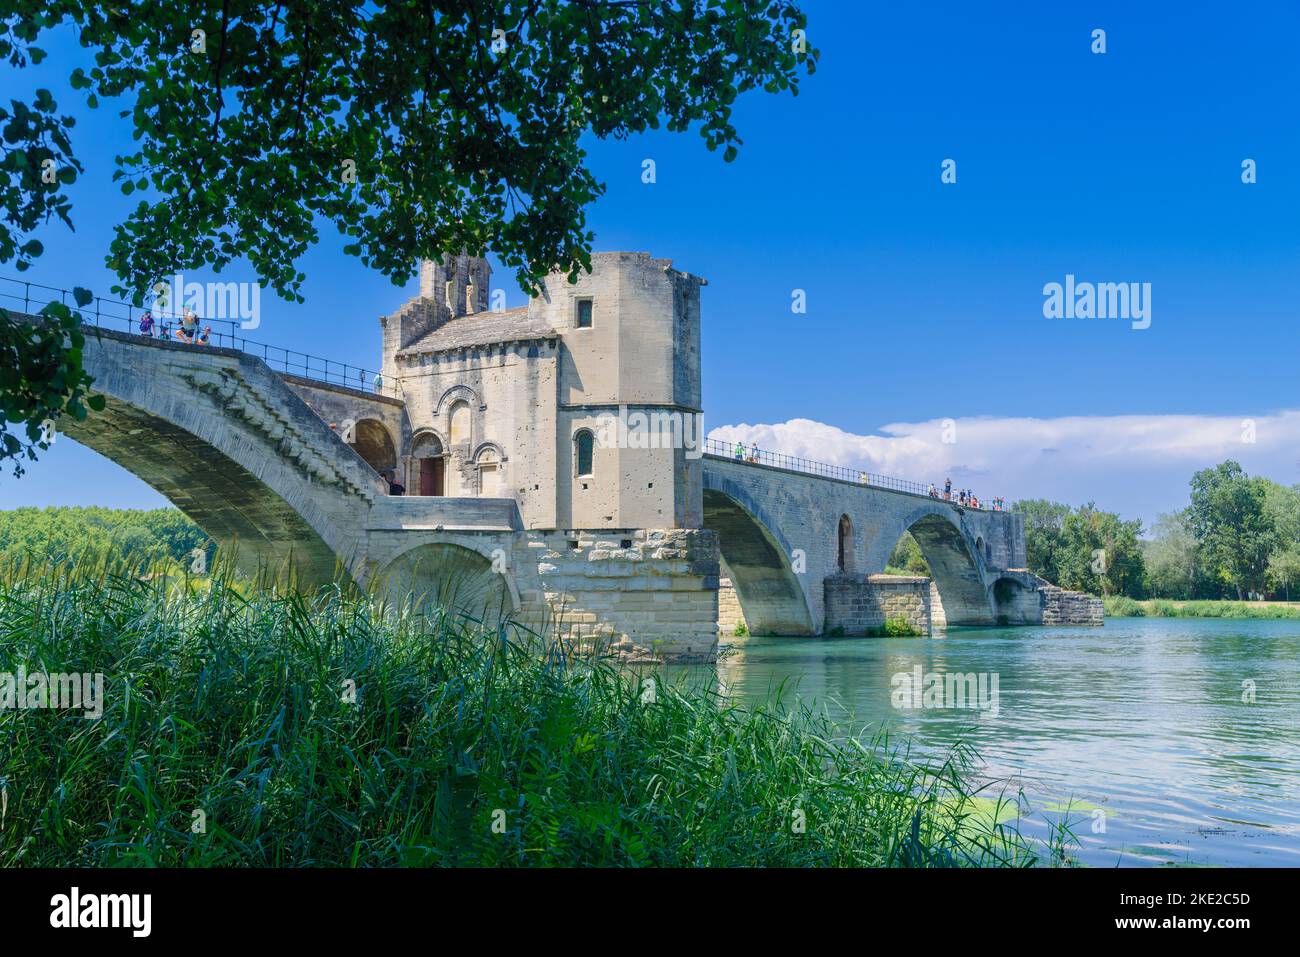 El Pont Saint-Bénézet, también conocido como el Pont d'Avignon, fue un puente medieval sobre el Rhône en la ciudad de Avignon, en el sur de Francia. Sólo cuatro Foto de stock